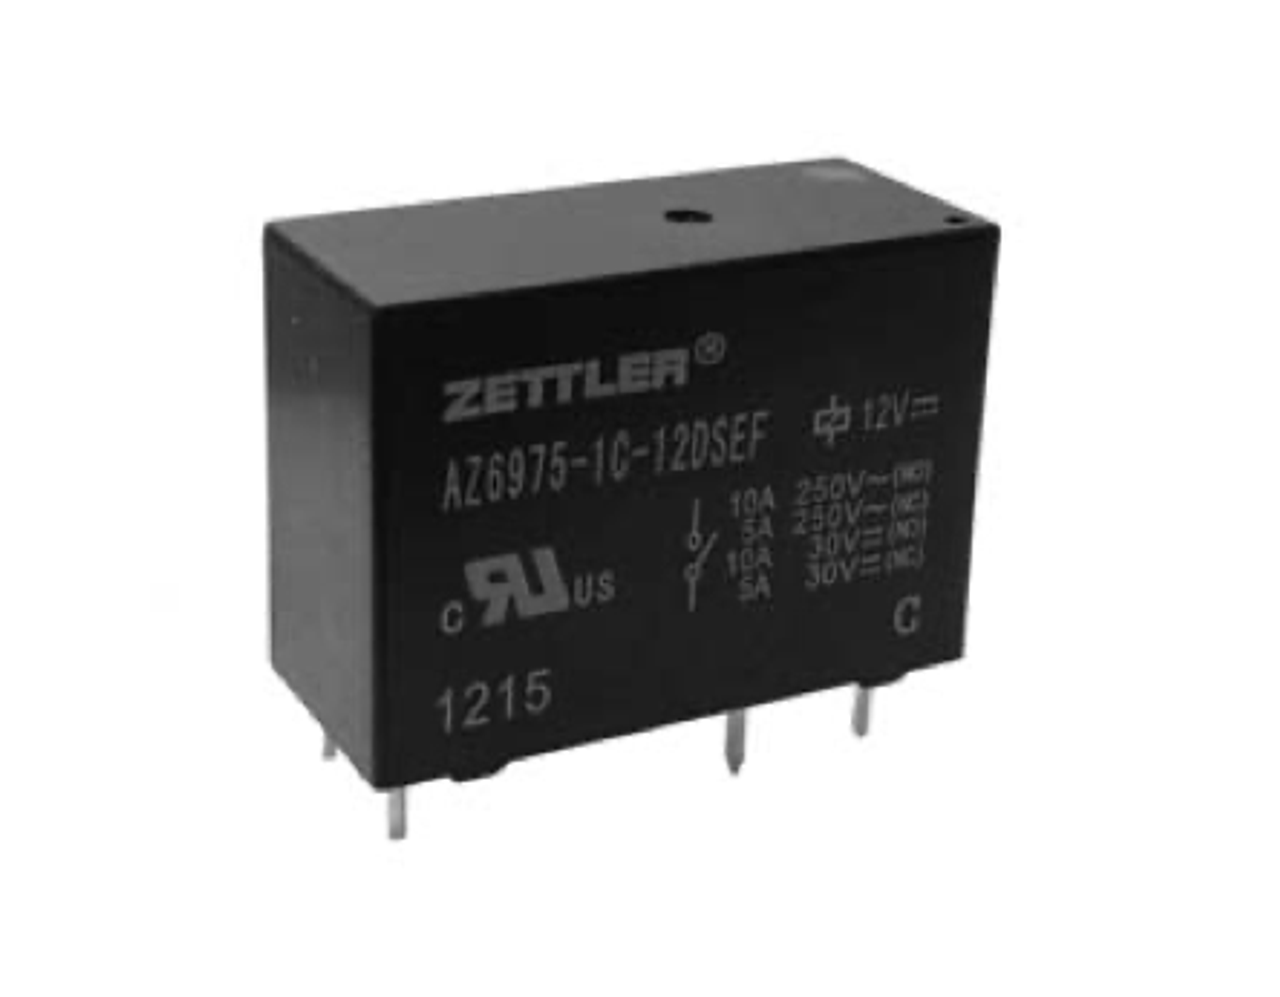 American Zettler AZ6975-1A-6D Power Relay